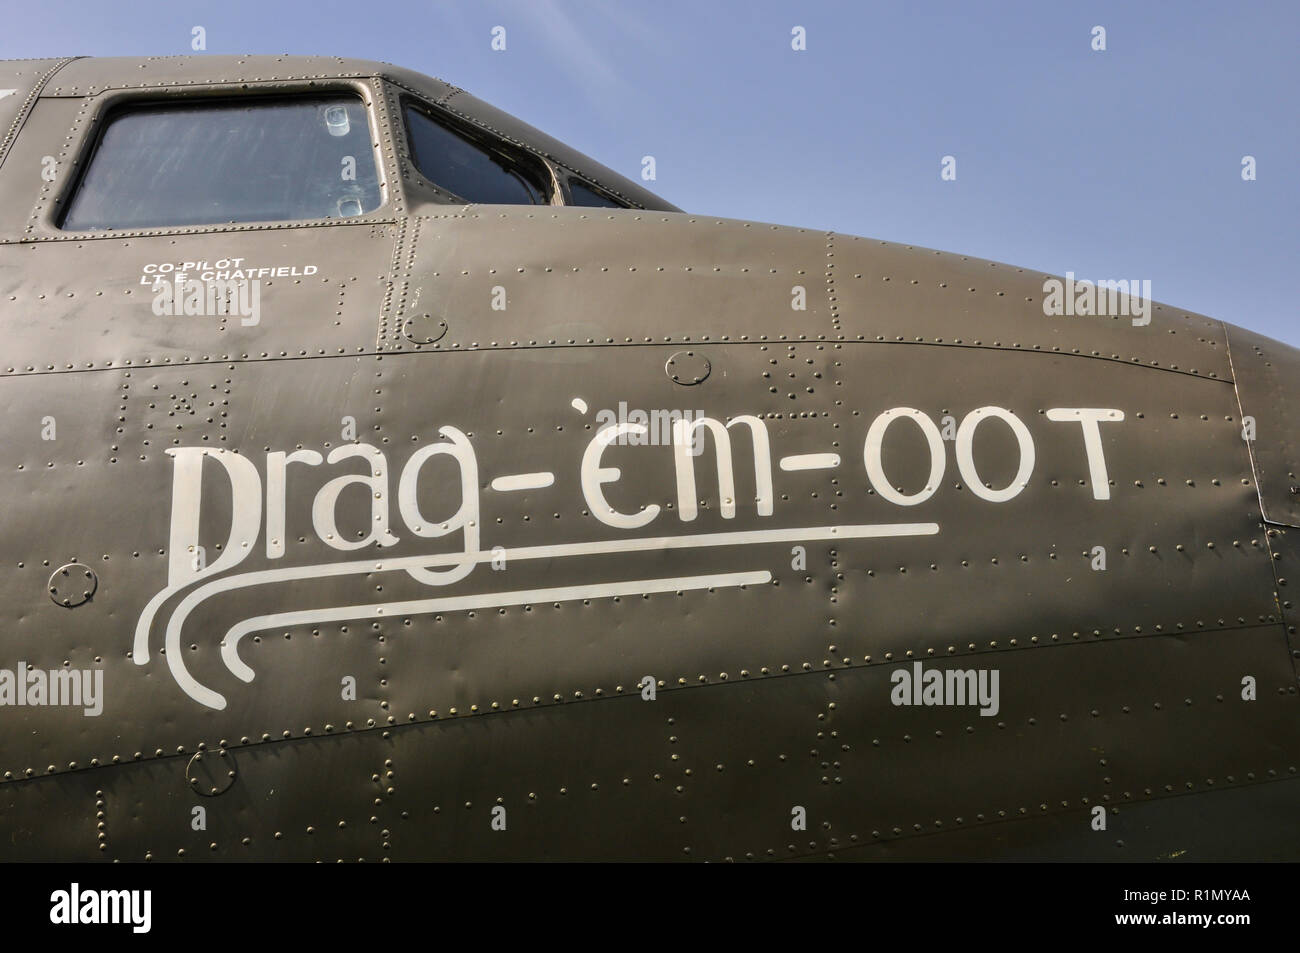 Douglas C-47 Skytrain, Dakota nommé Drag em Oot. L'avion vétéran du jour J a servi dans l'US Army Air Force larguant des parachutistes à St Mere Eglise près de Normandie Banque D'Images